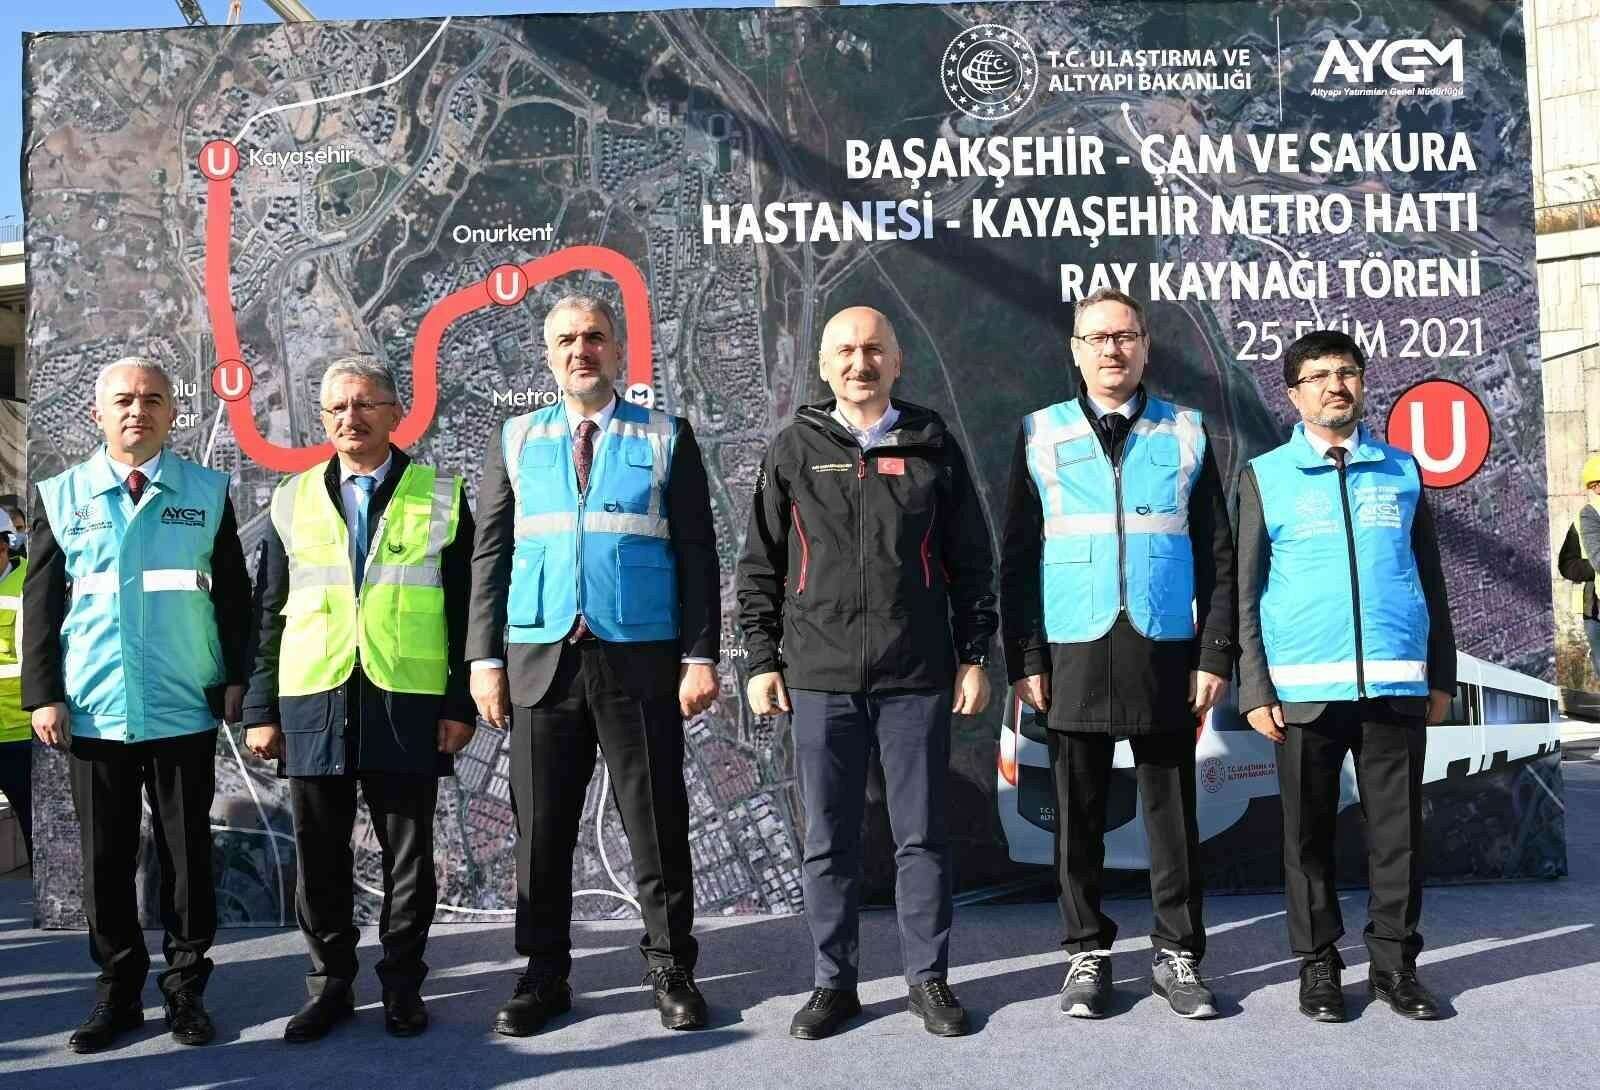 Başakşehir Kayaşehir Metro Hattı